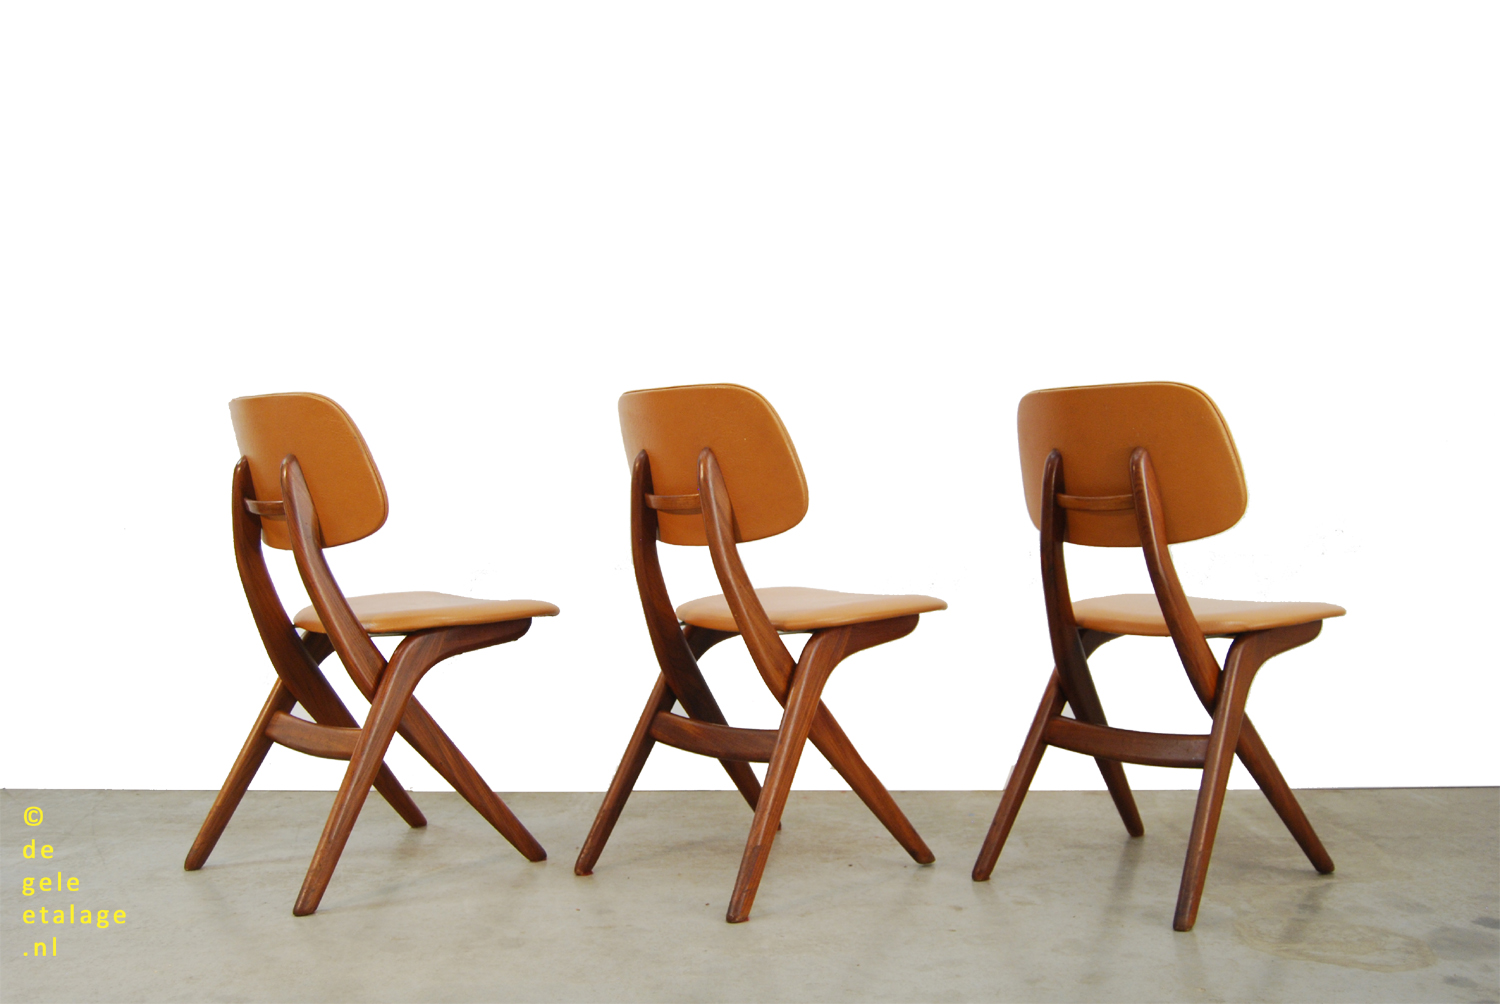 / Vintage teakhouten eettafel stoelen / Louis van Teeffelen / Webe / 1960s / scissor chairs | DE GELE ETALAGE